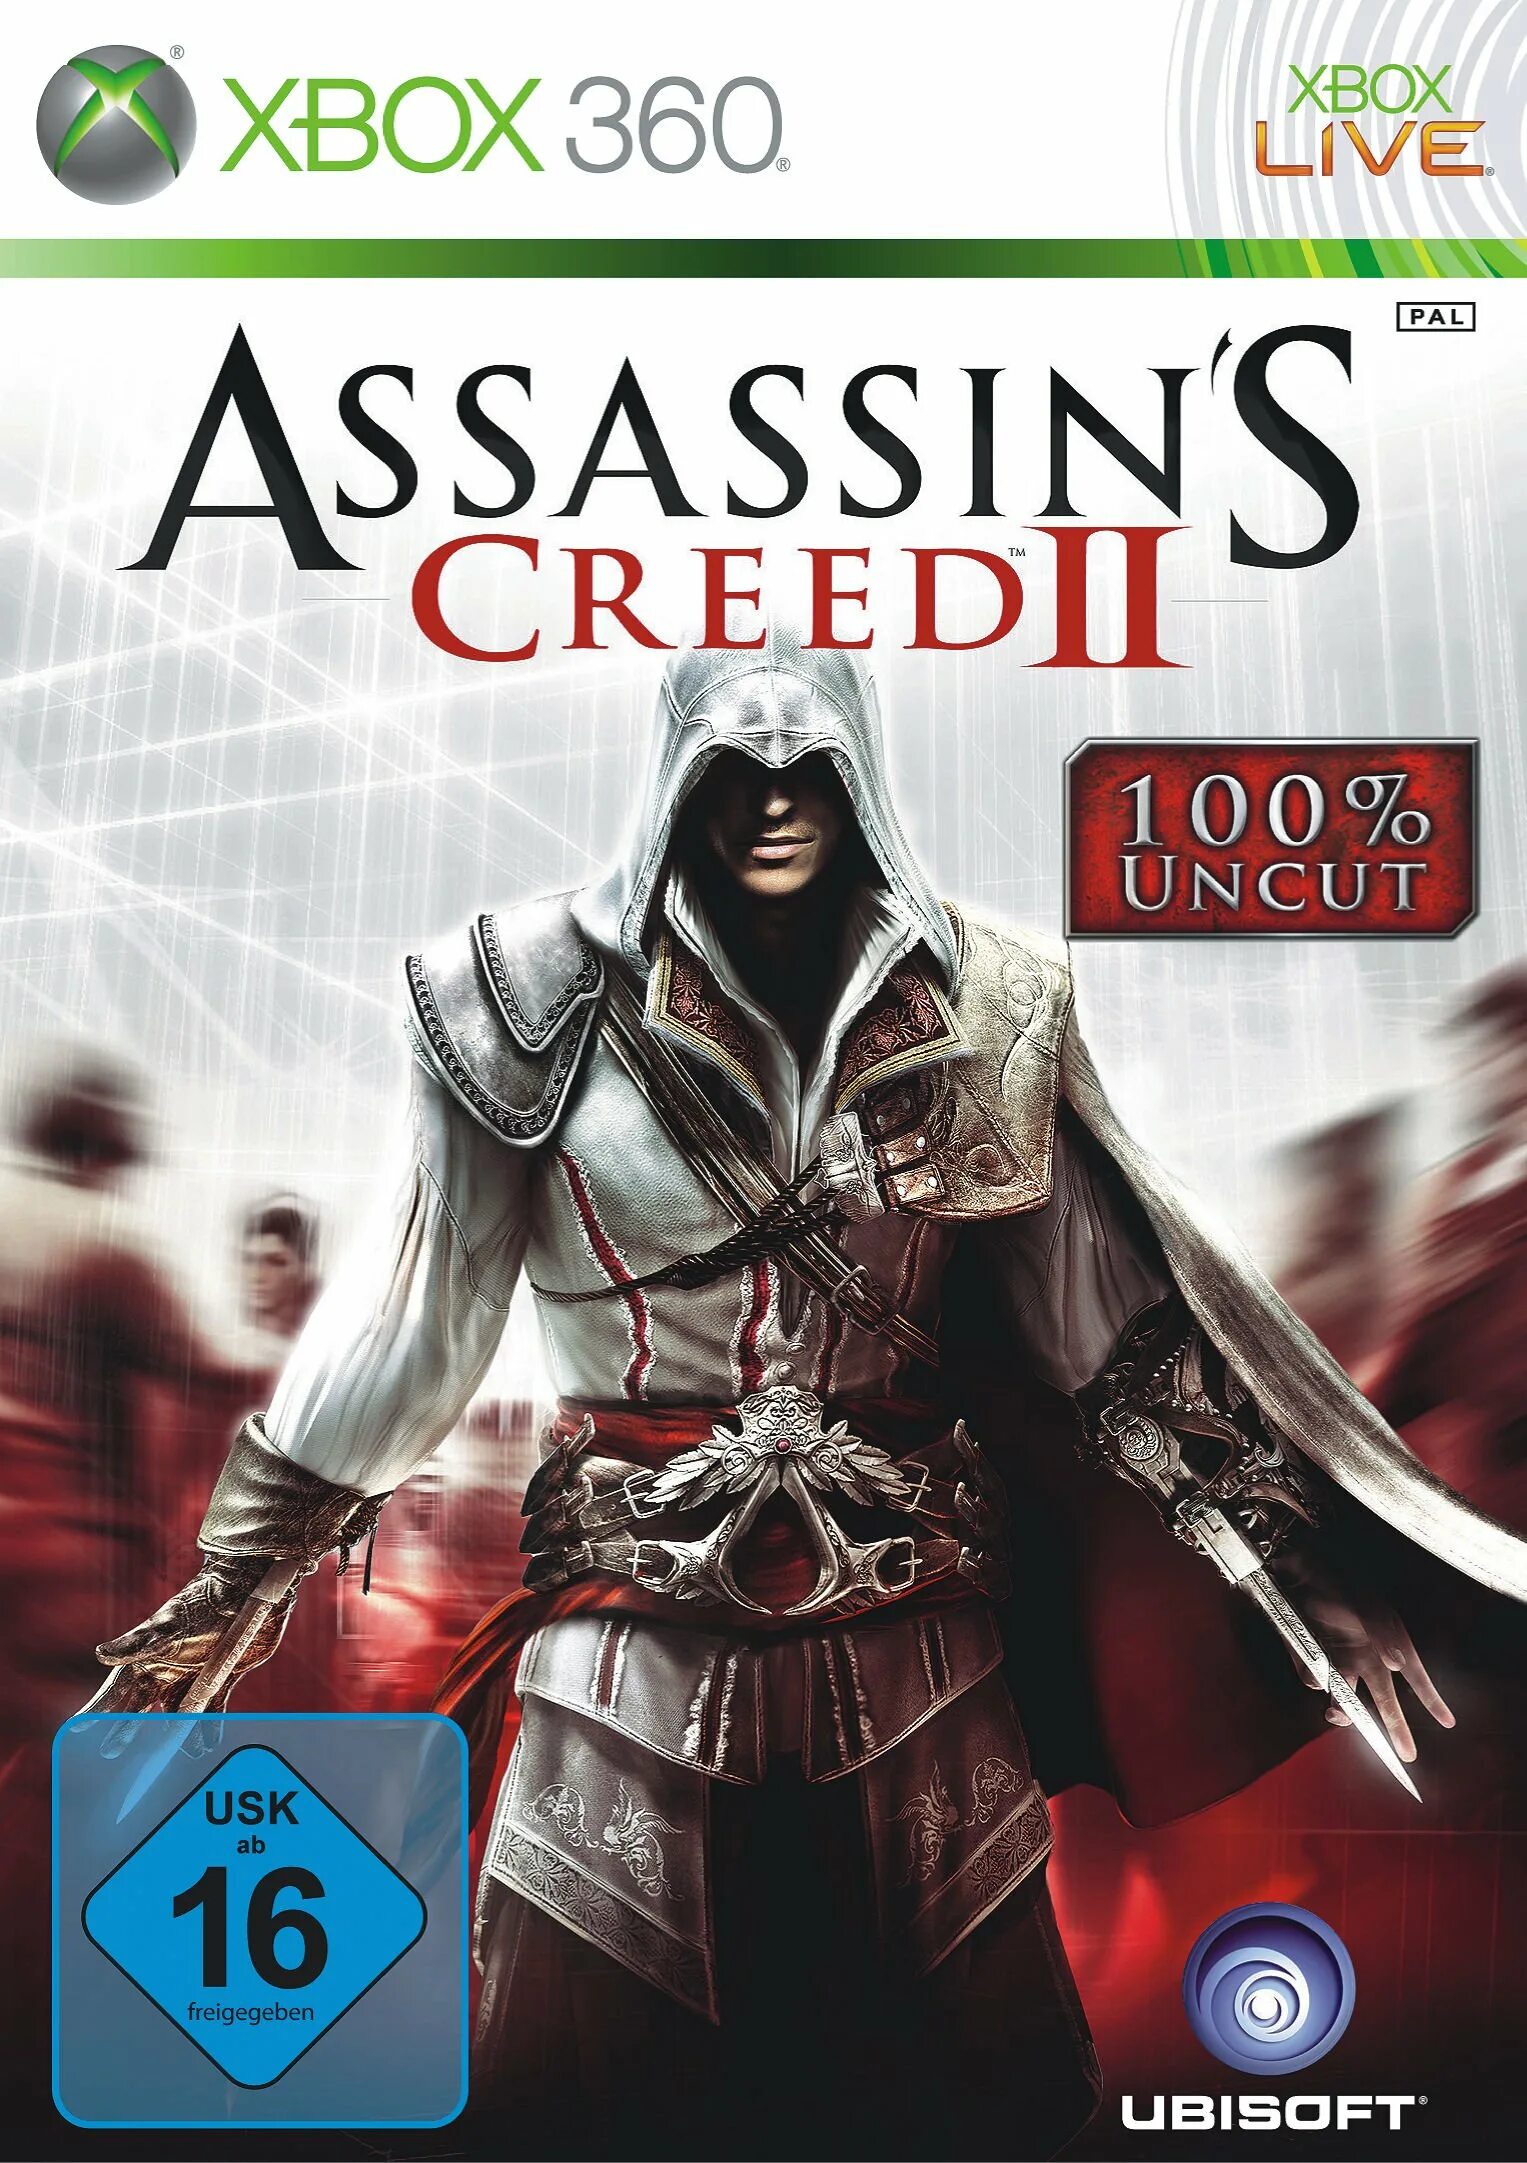 Ассасин хбокс. Assassins Creed 2 Xbox 360 обложка. Ассасин Крид на Xbox 360. Ассасин Крид 2 на Икс бокс 360. Ассасин Крид 2 на Икс бокс.